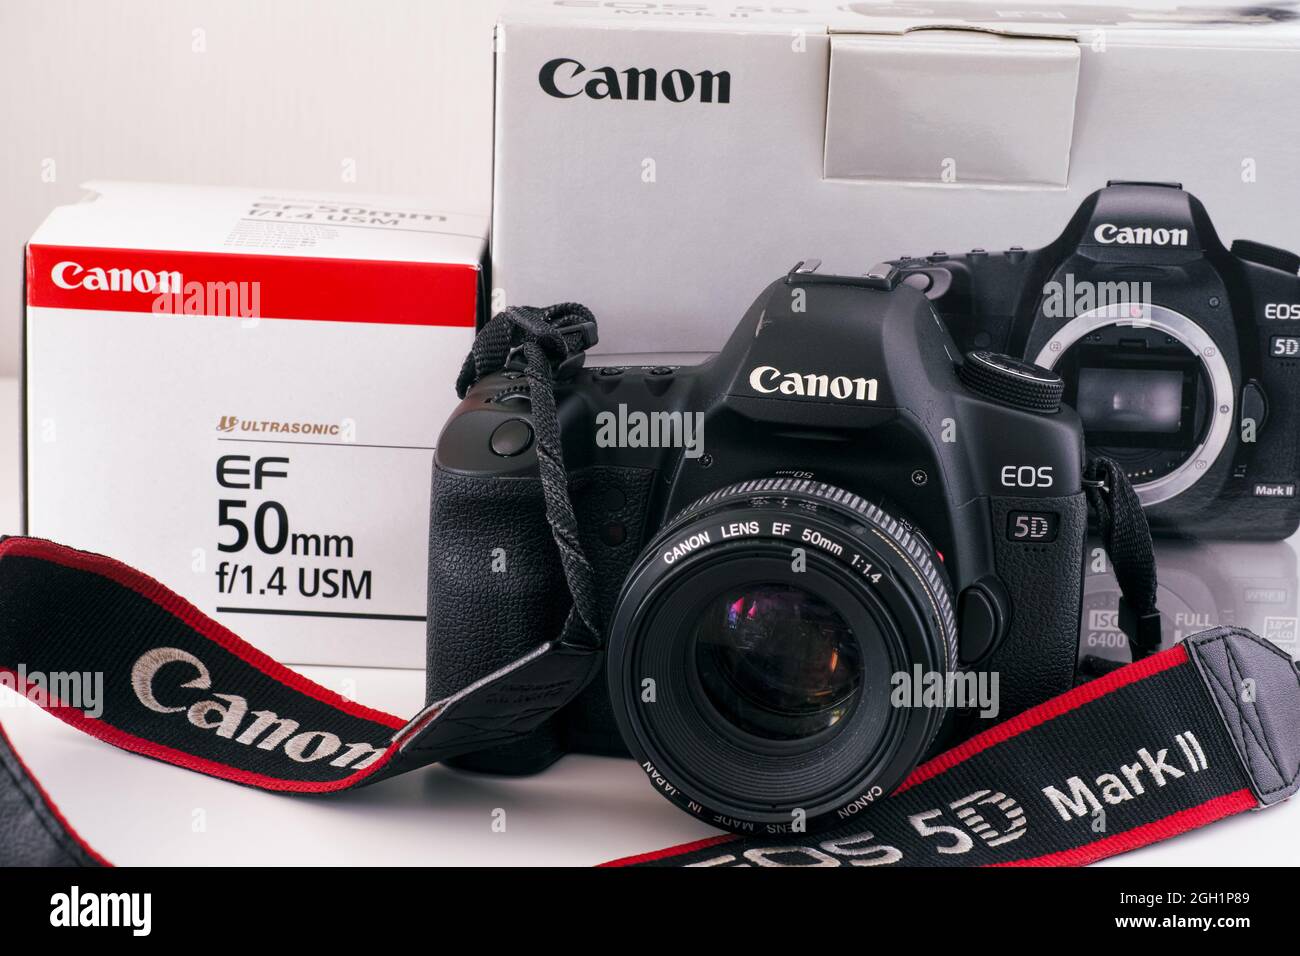 Canon Eos 5d Mark Ii Fotos e Imágenes de stock - Alamy